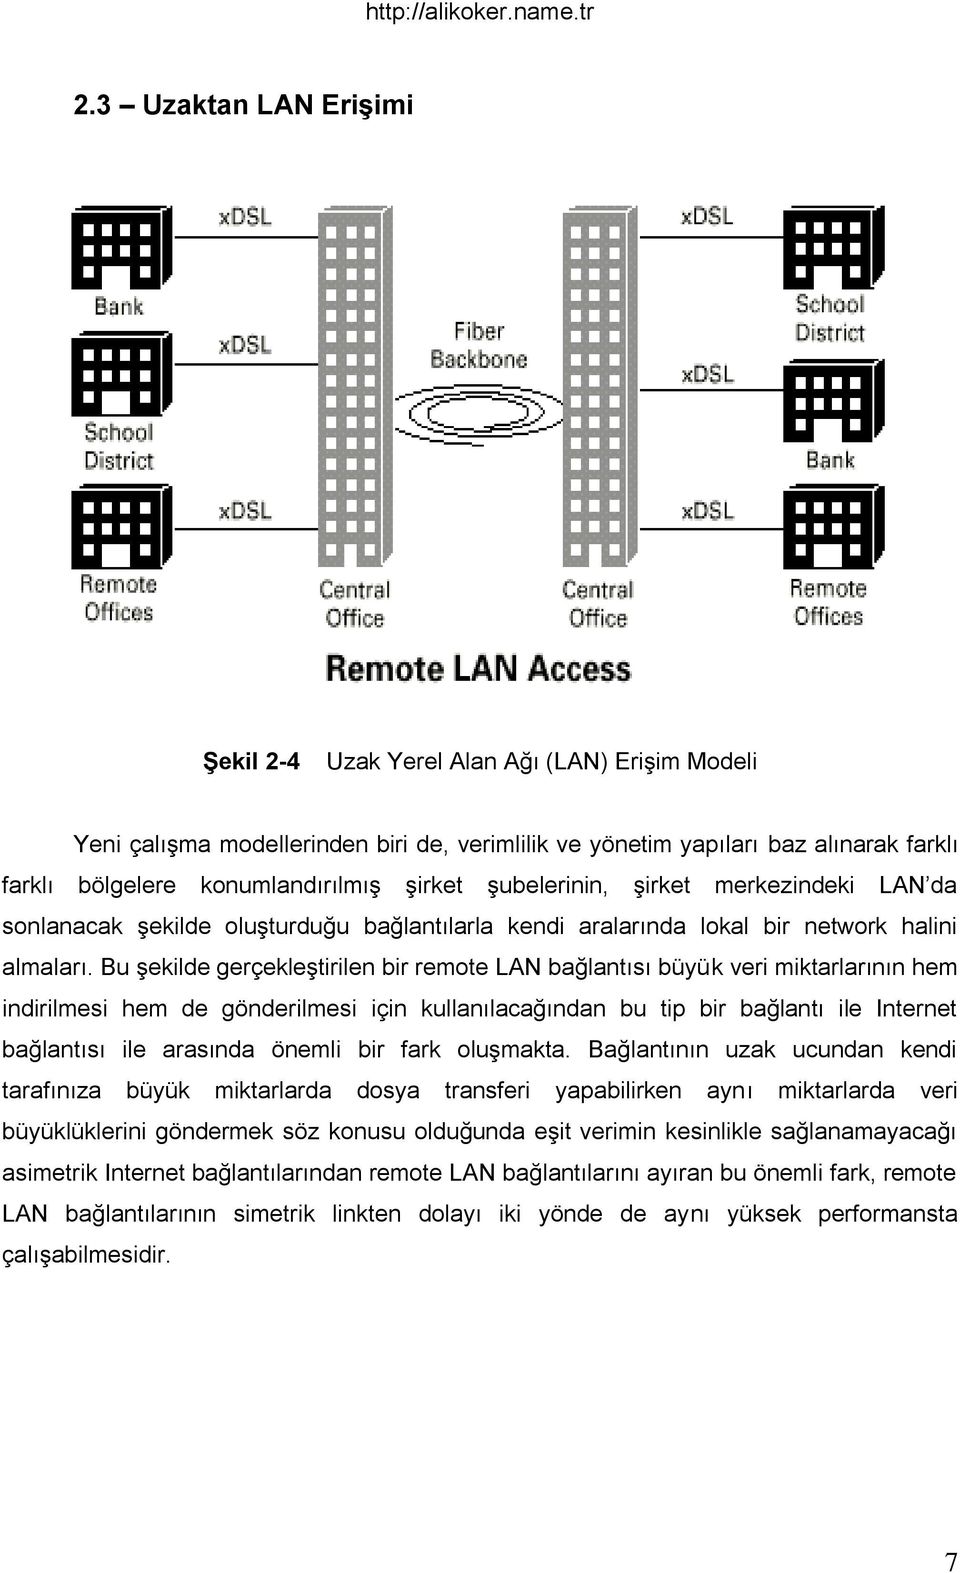 Bu Ģekilde gerçekleģtirilen bir remote LAN bağlantısı büyük veri miktarlarının hem indirilmesi hem de gönderilmesi için kullanılacağından bu tip bir bağlantı ile Internet bağlantısı ile arasında